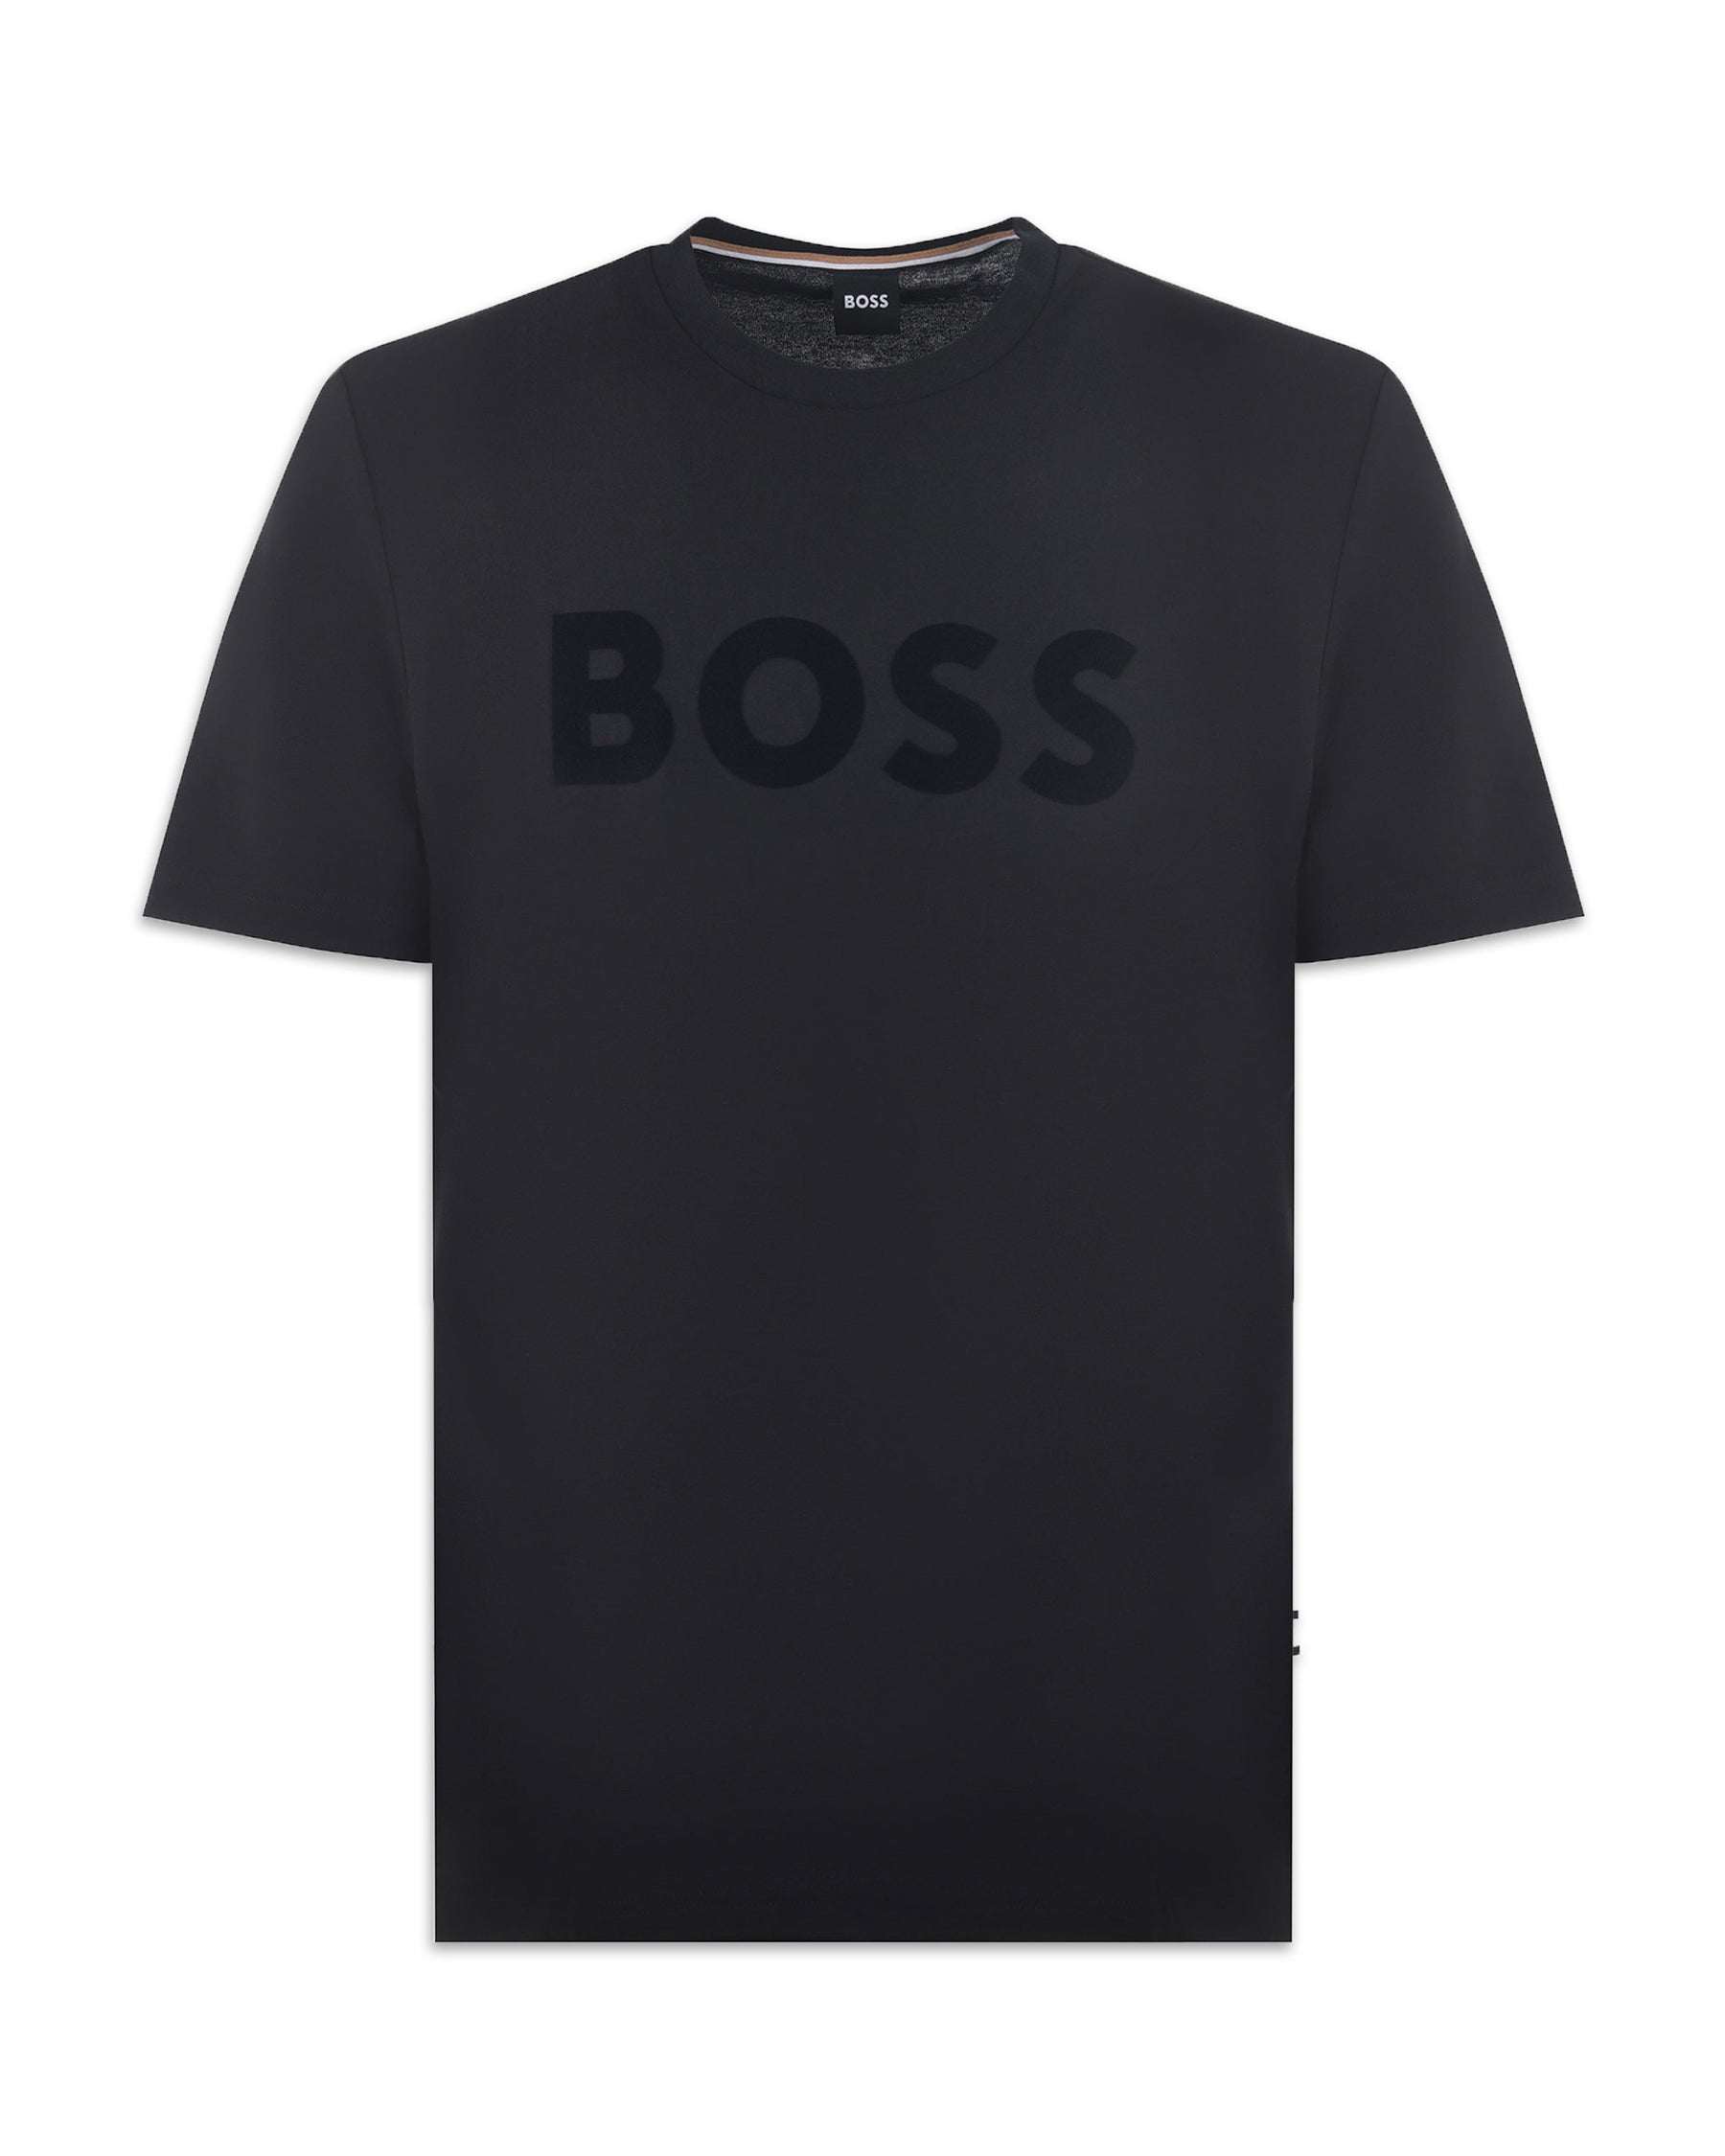 T-shirt Uomo Boss Tiburt 318 Nero